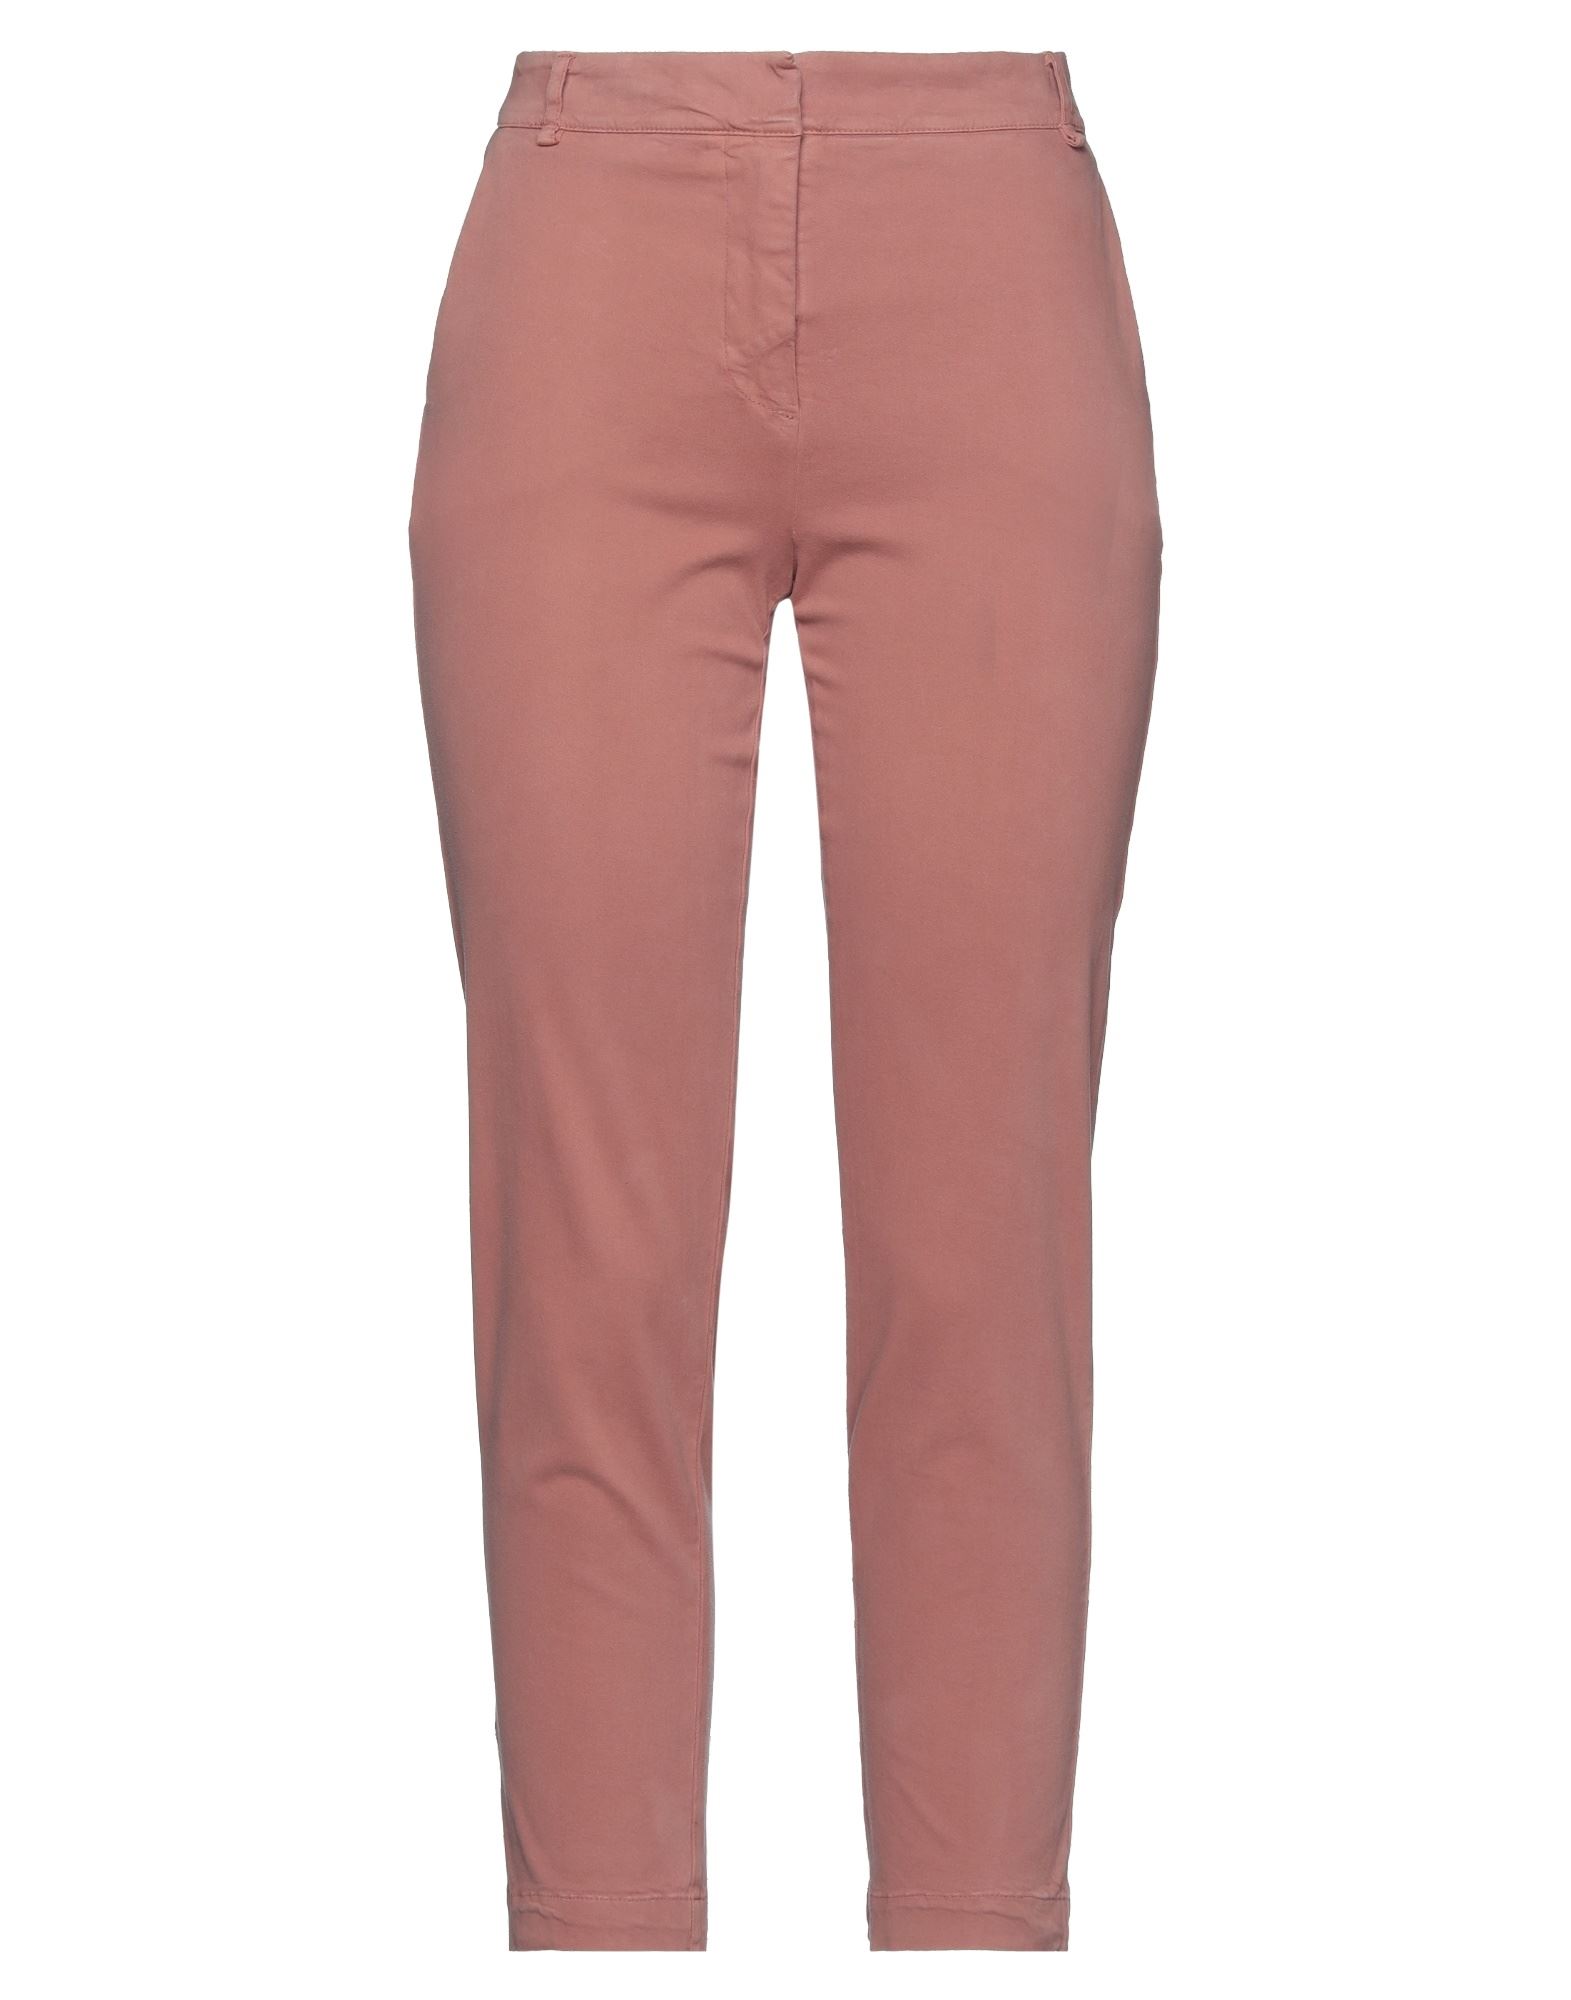 Shop Alessia Santi Woman Pants Pastel Pink Size 12 Cotton, Viscose, Elastane